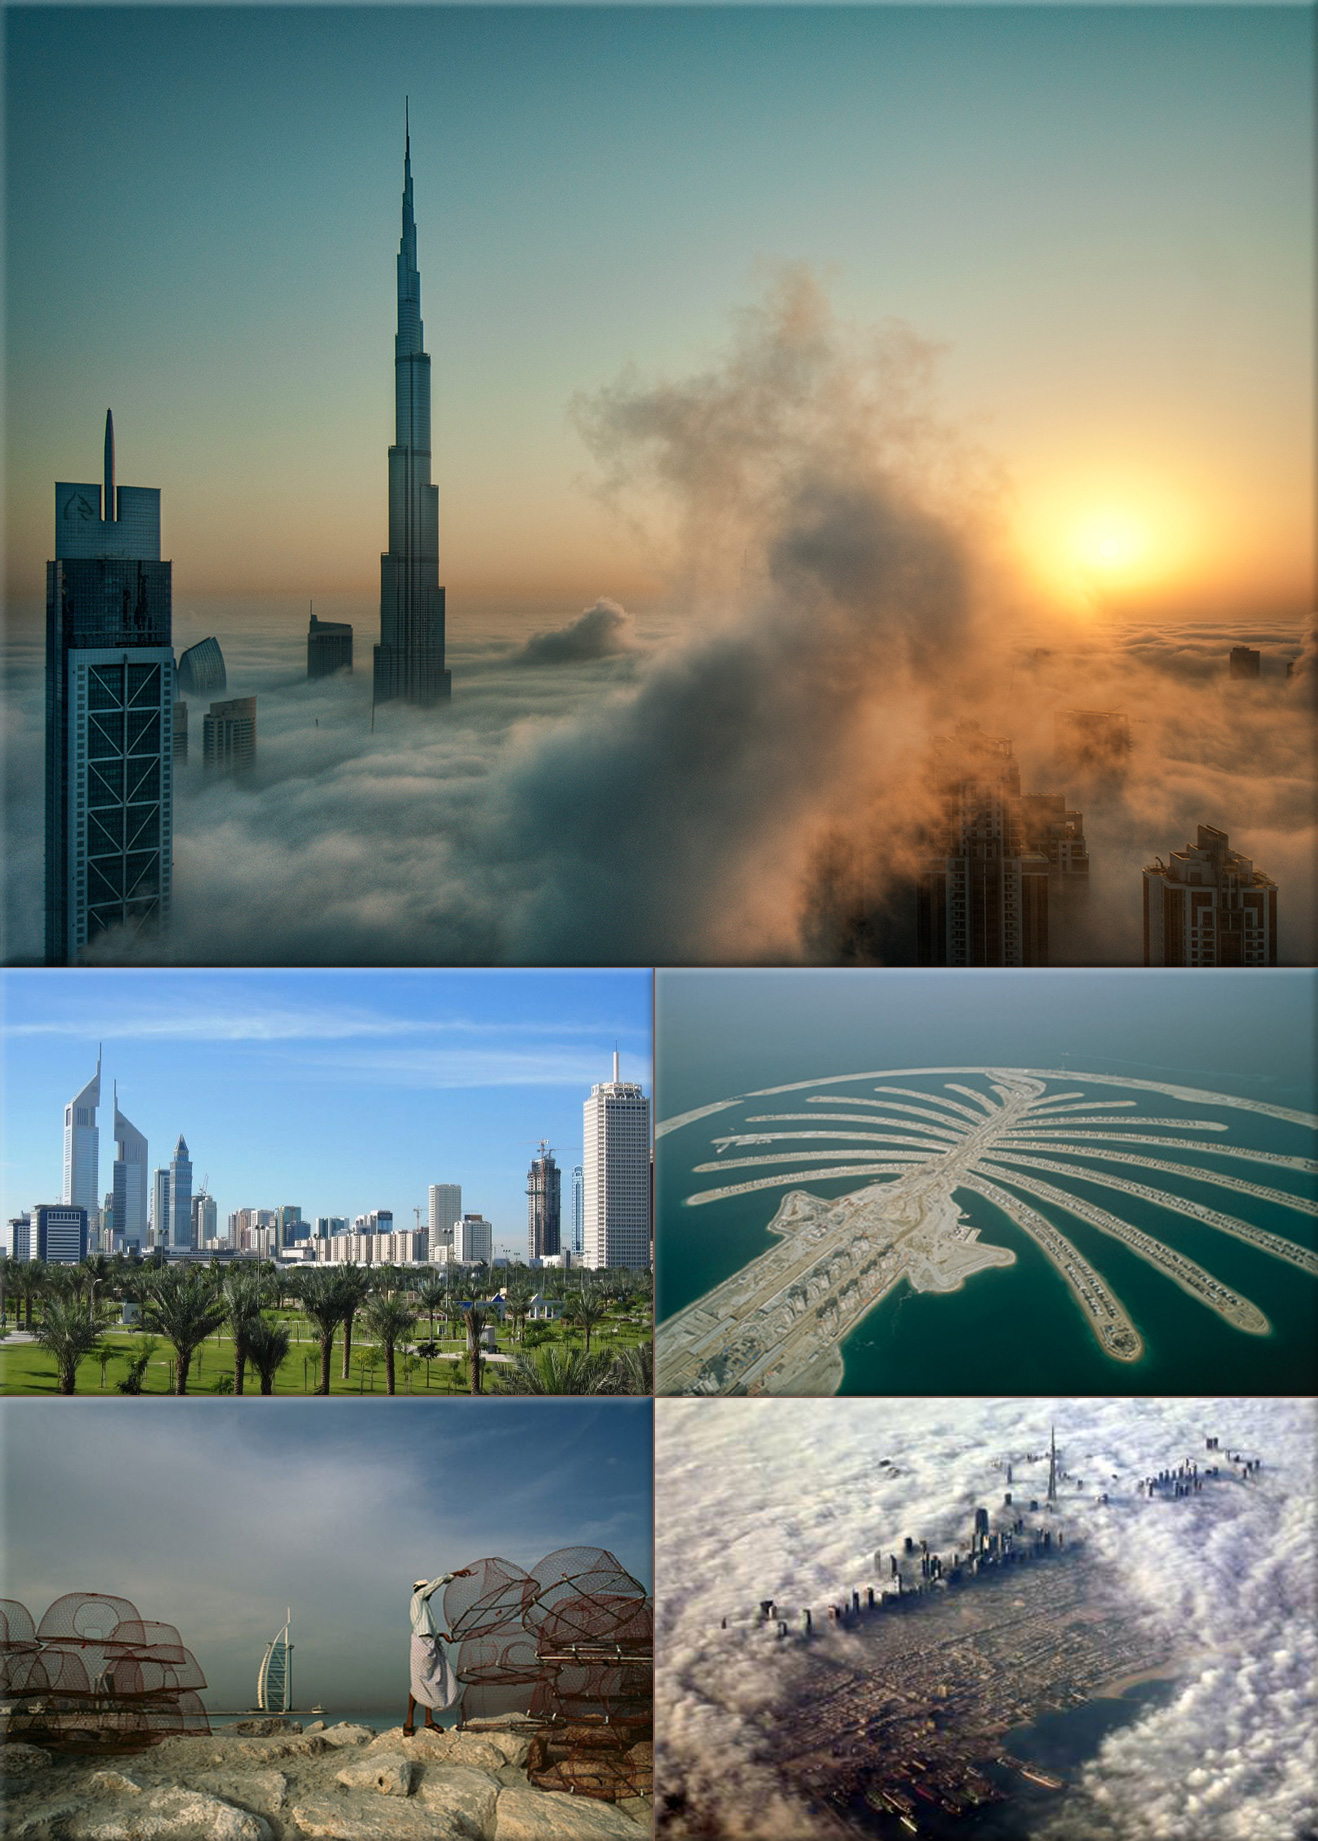 Abu Dhabi, Ajman, Fujairah, Sharjah, Dubai, and Umm Al Quwain form the United Arab Emirates